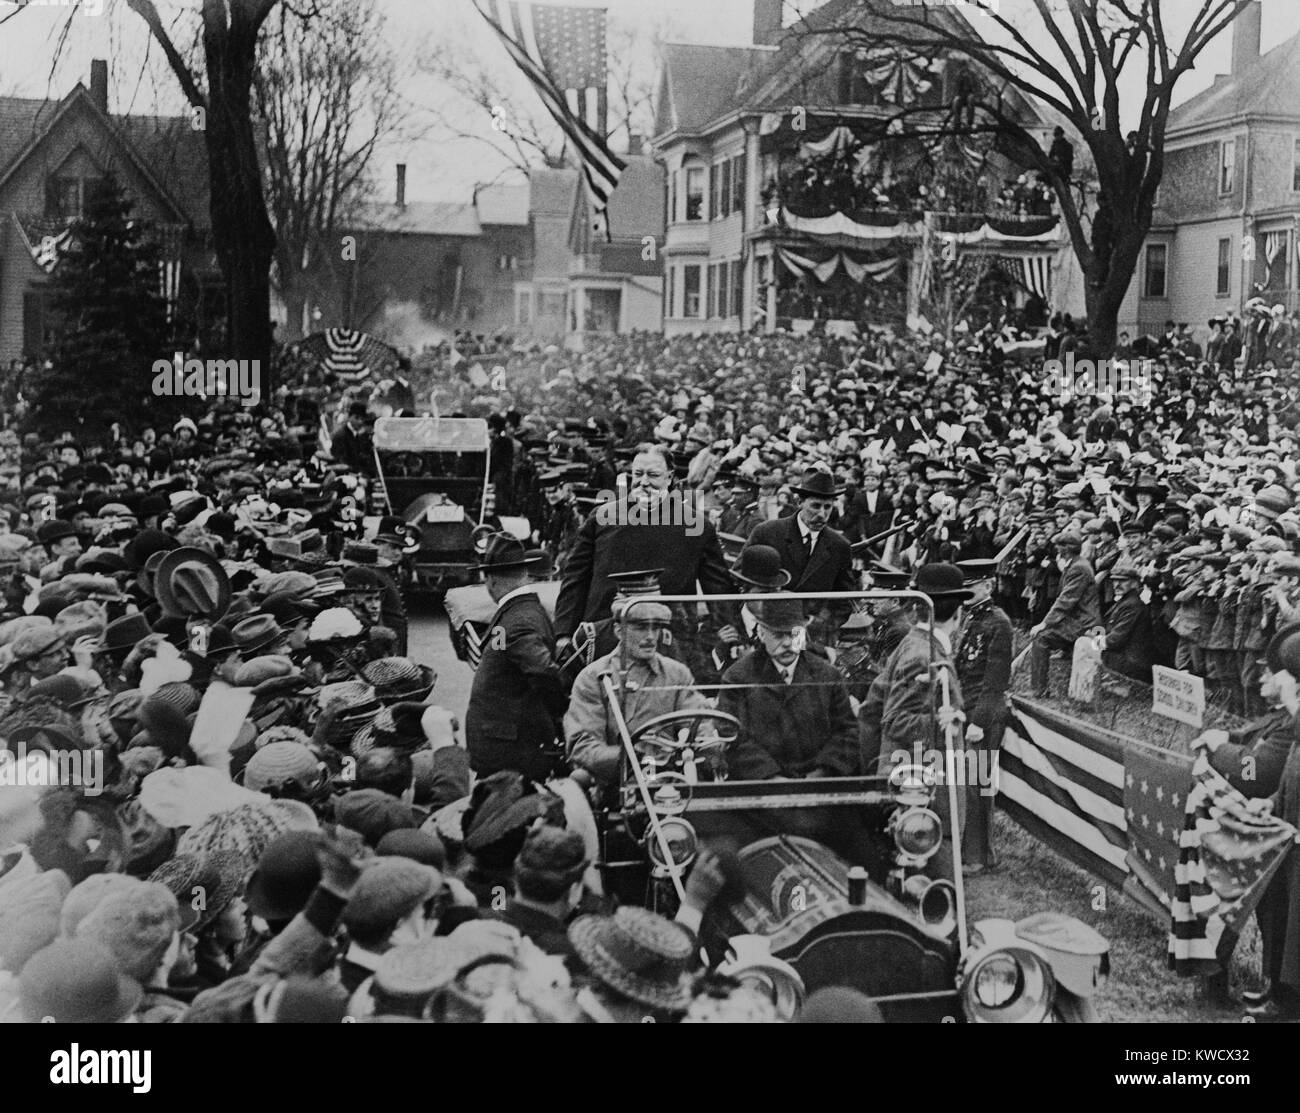 Präsident William Howard Taft paradieren in einem offenen Automobil, C. 1912. Lage unbekannt (BSLOC 2017 2 122) Stockfoto